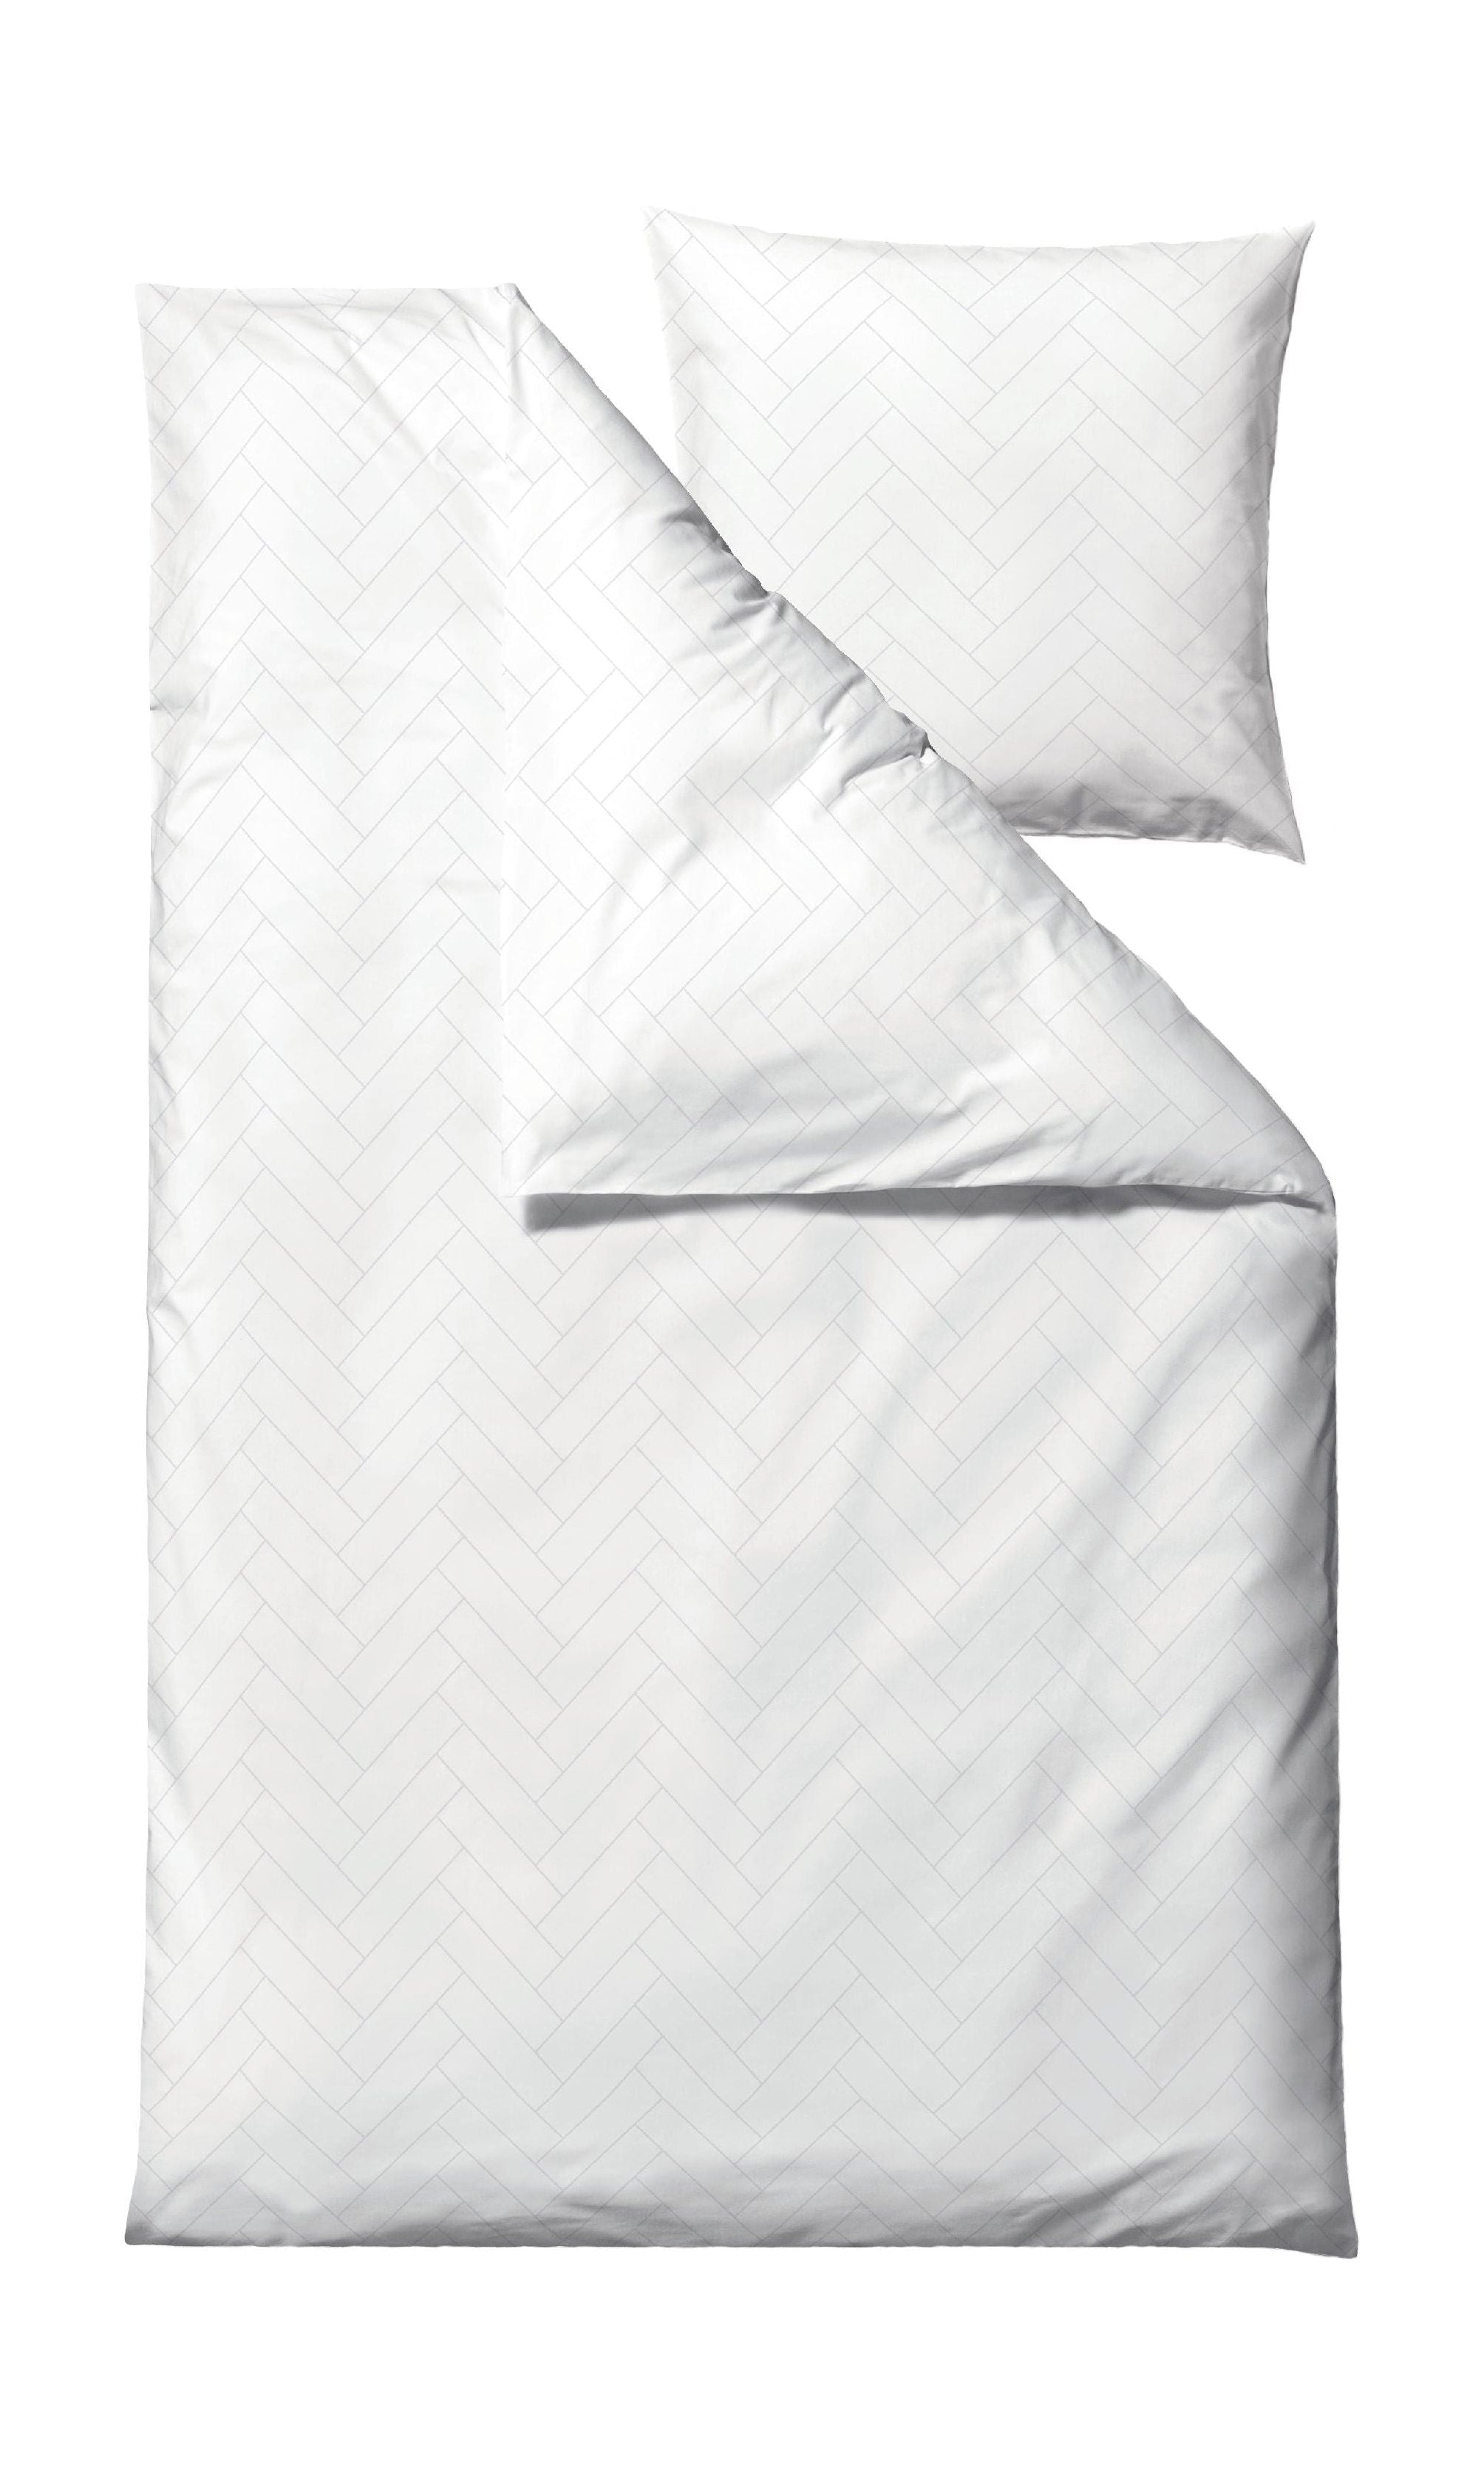 Södahl Plattor sängkläder 140x200 cm, vit